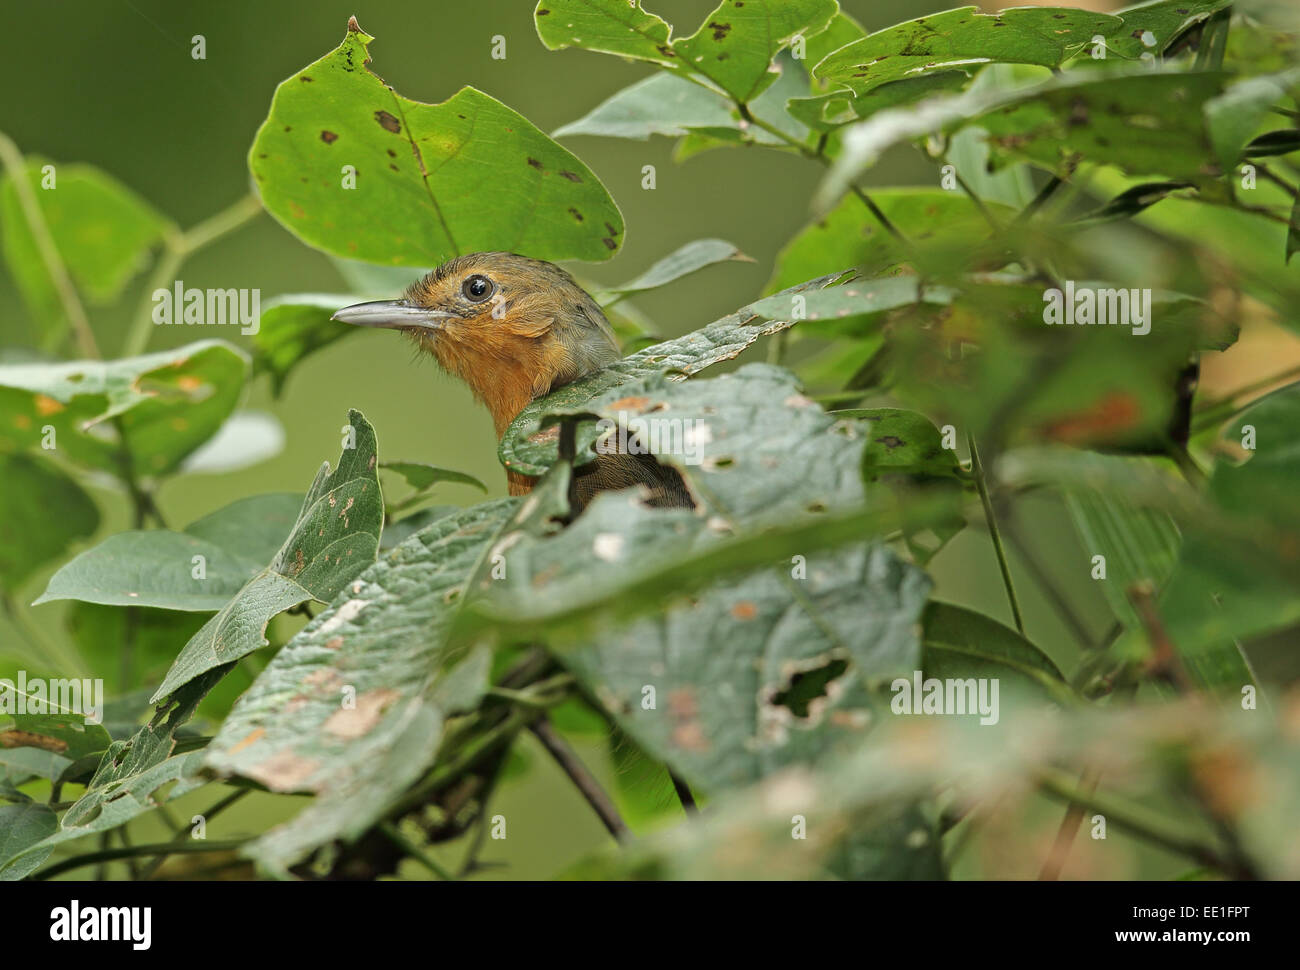 Dusky Antbird (Cercomacra tyrannina tyrannina) adulte, perché parmi une végétation dense, de Pipeline Road, Panama, novembre Banque D'Images